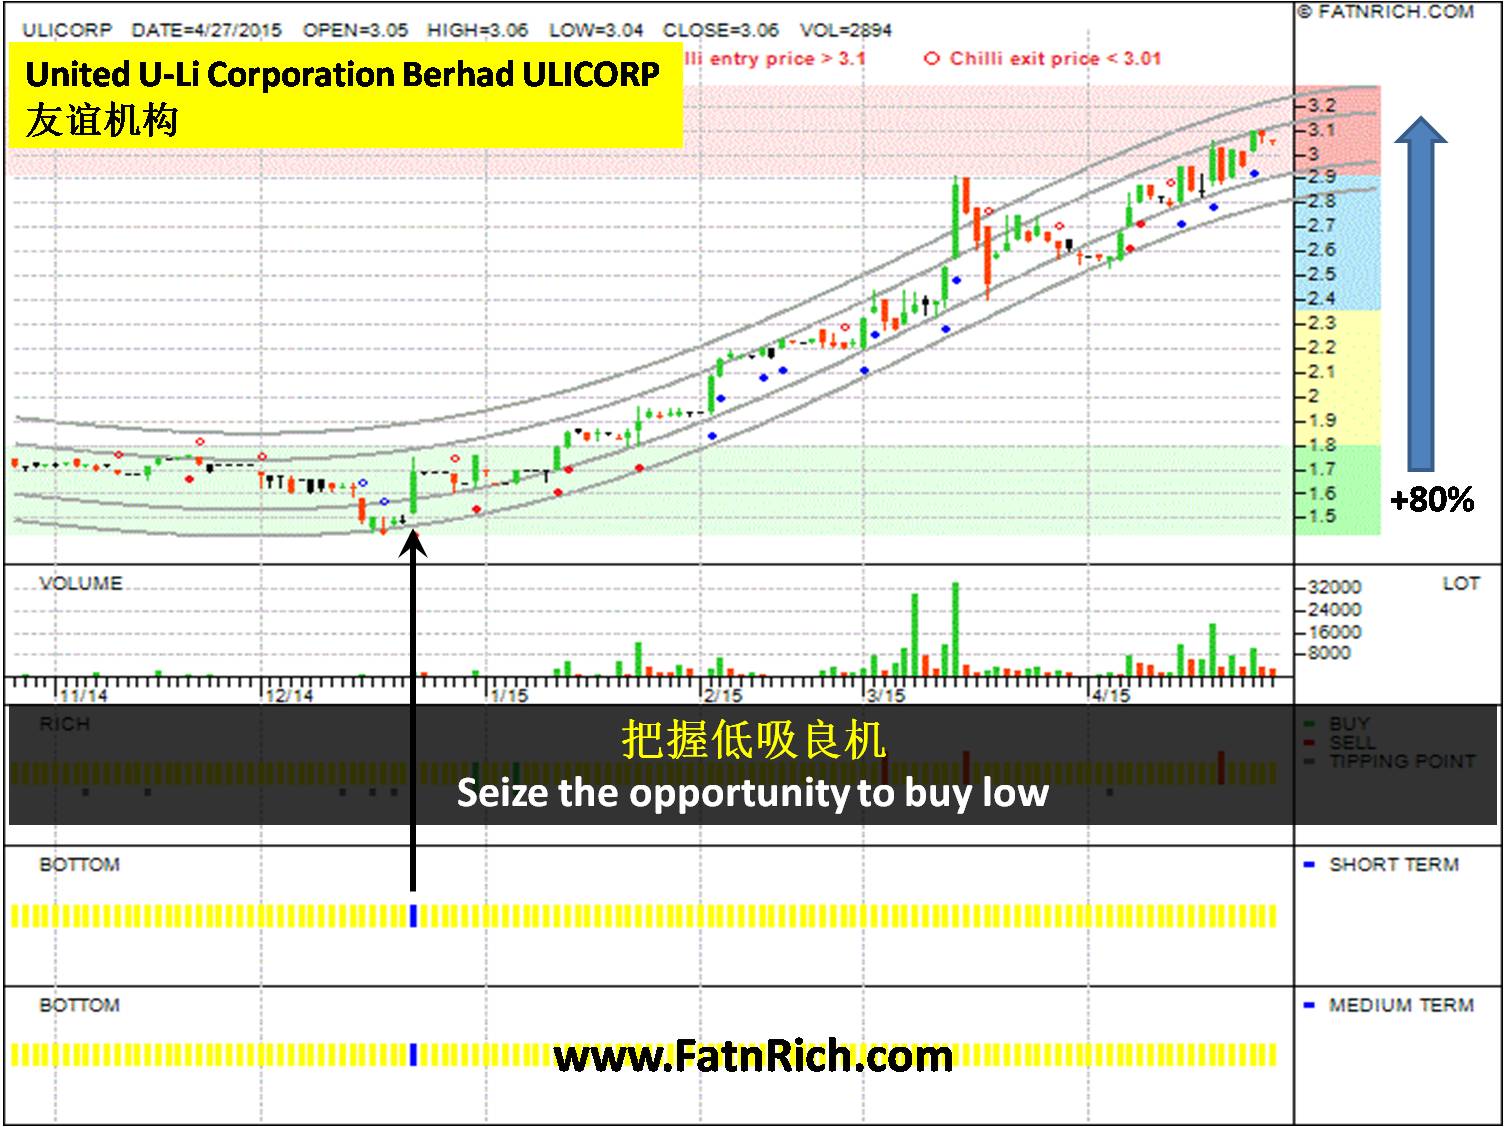 Malaysia Stock UNITED U-LI CORPORATION BHD (ULICORP 7133)